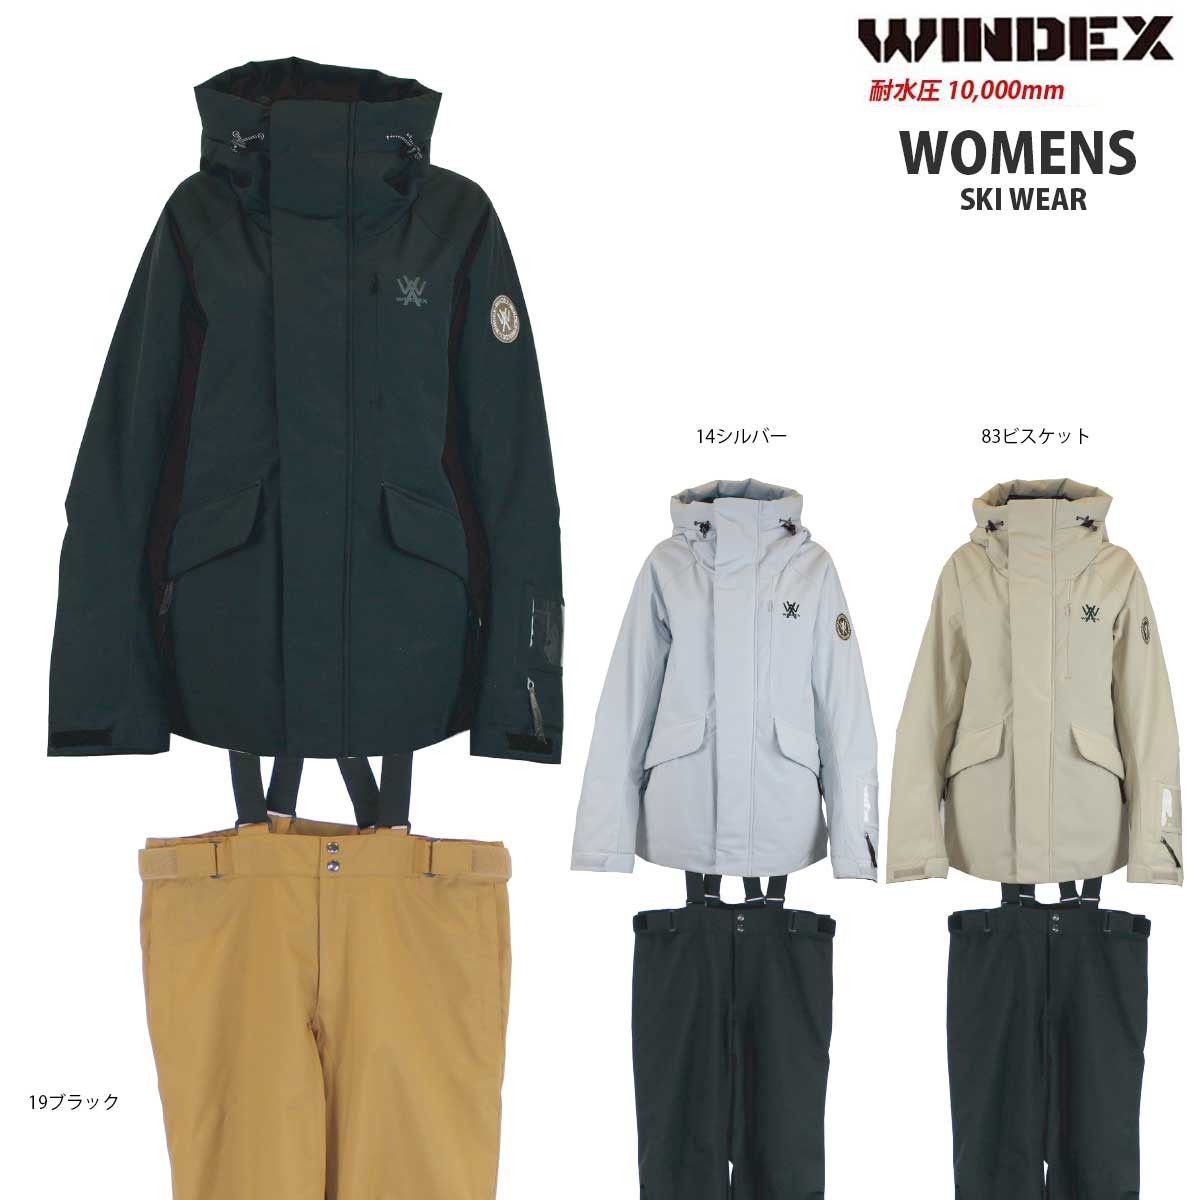 WINDEX(ウィンデックス) WS-5704 レディース スキースーツ スキーウェア 上下セット 耐水圧10000mm